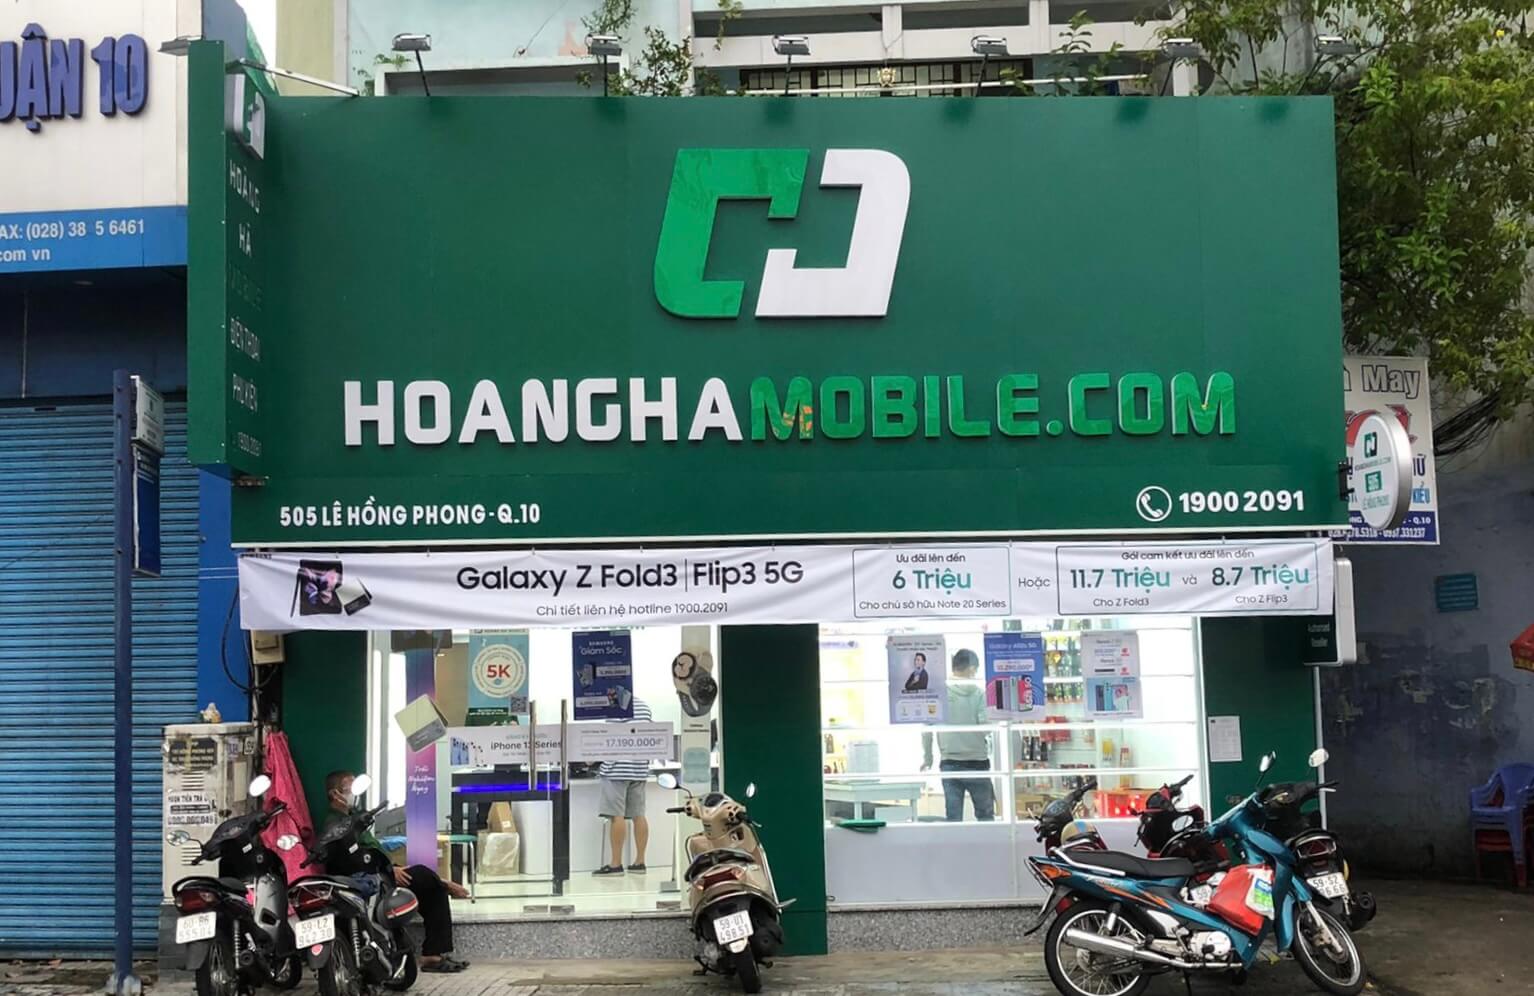 Hoàng Hà Mobile là cửa hàng cung cấp dịch vụ thuê bao di động của nhà mạng Vietnamobile